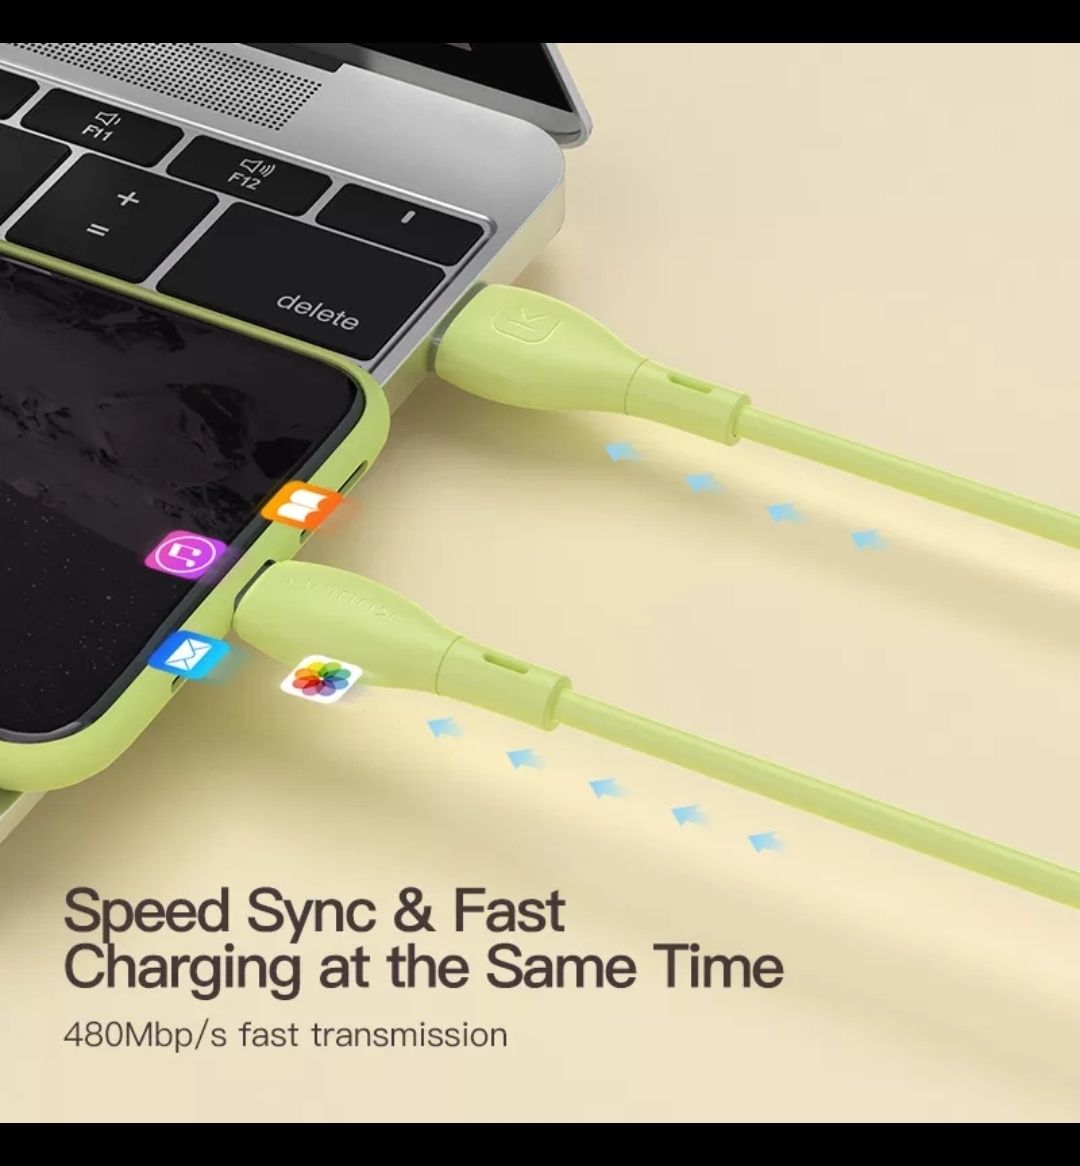 Cablu usb c - fast charging - lungime 2m (verde, mov)

Predare persona